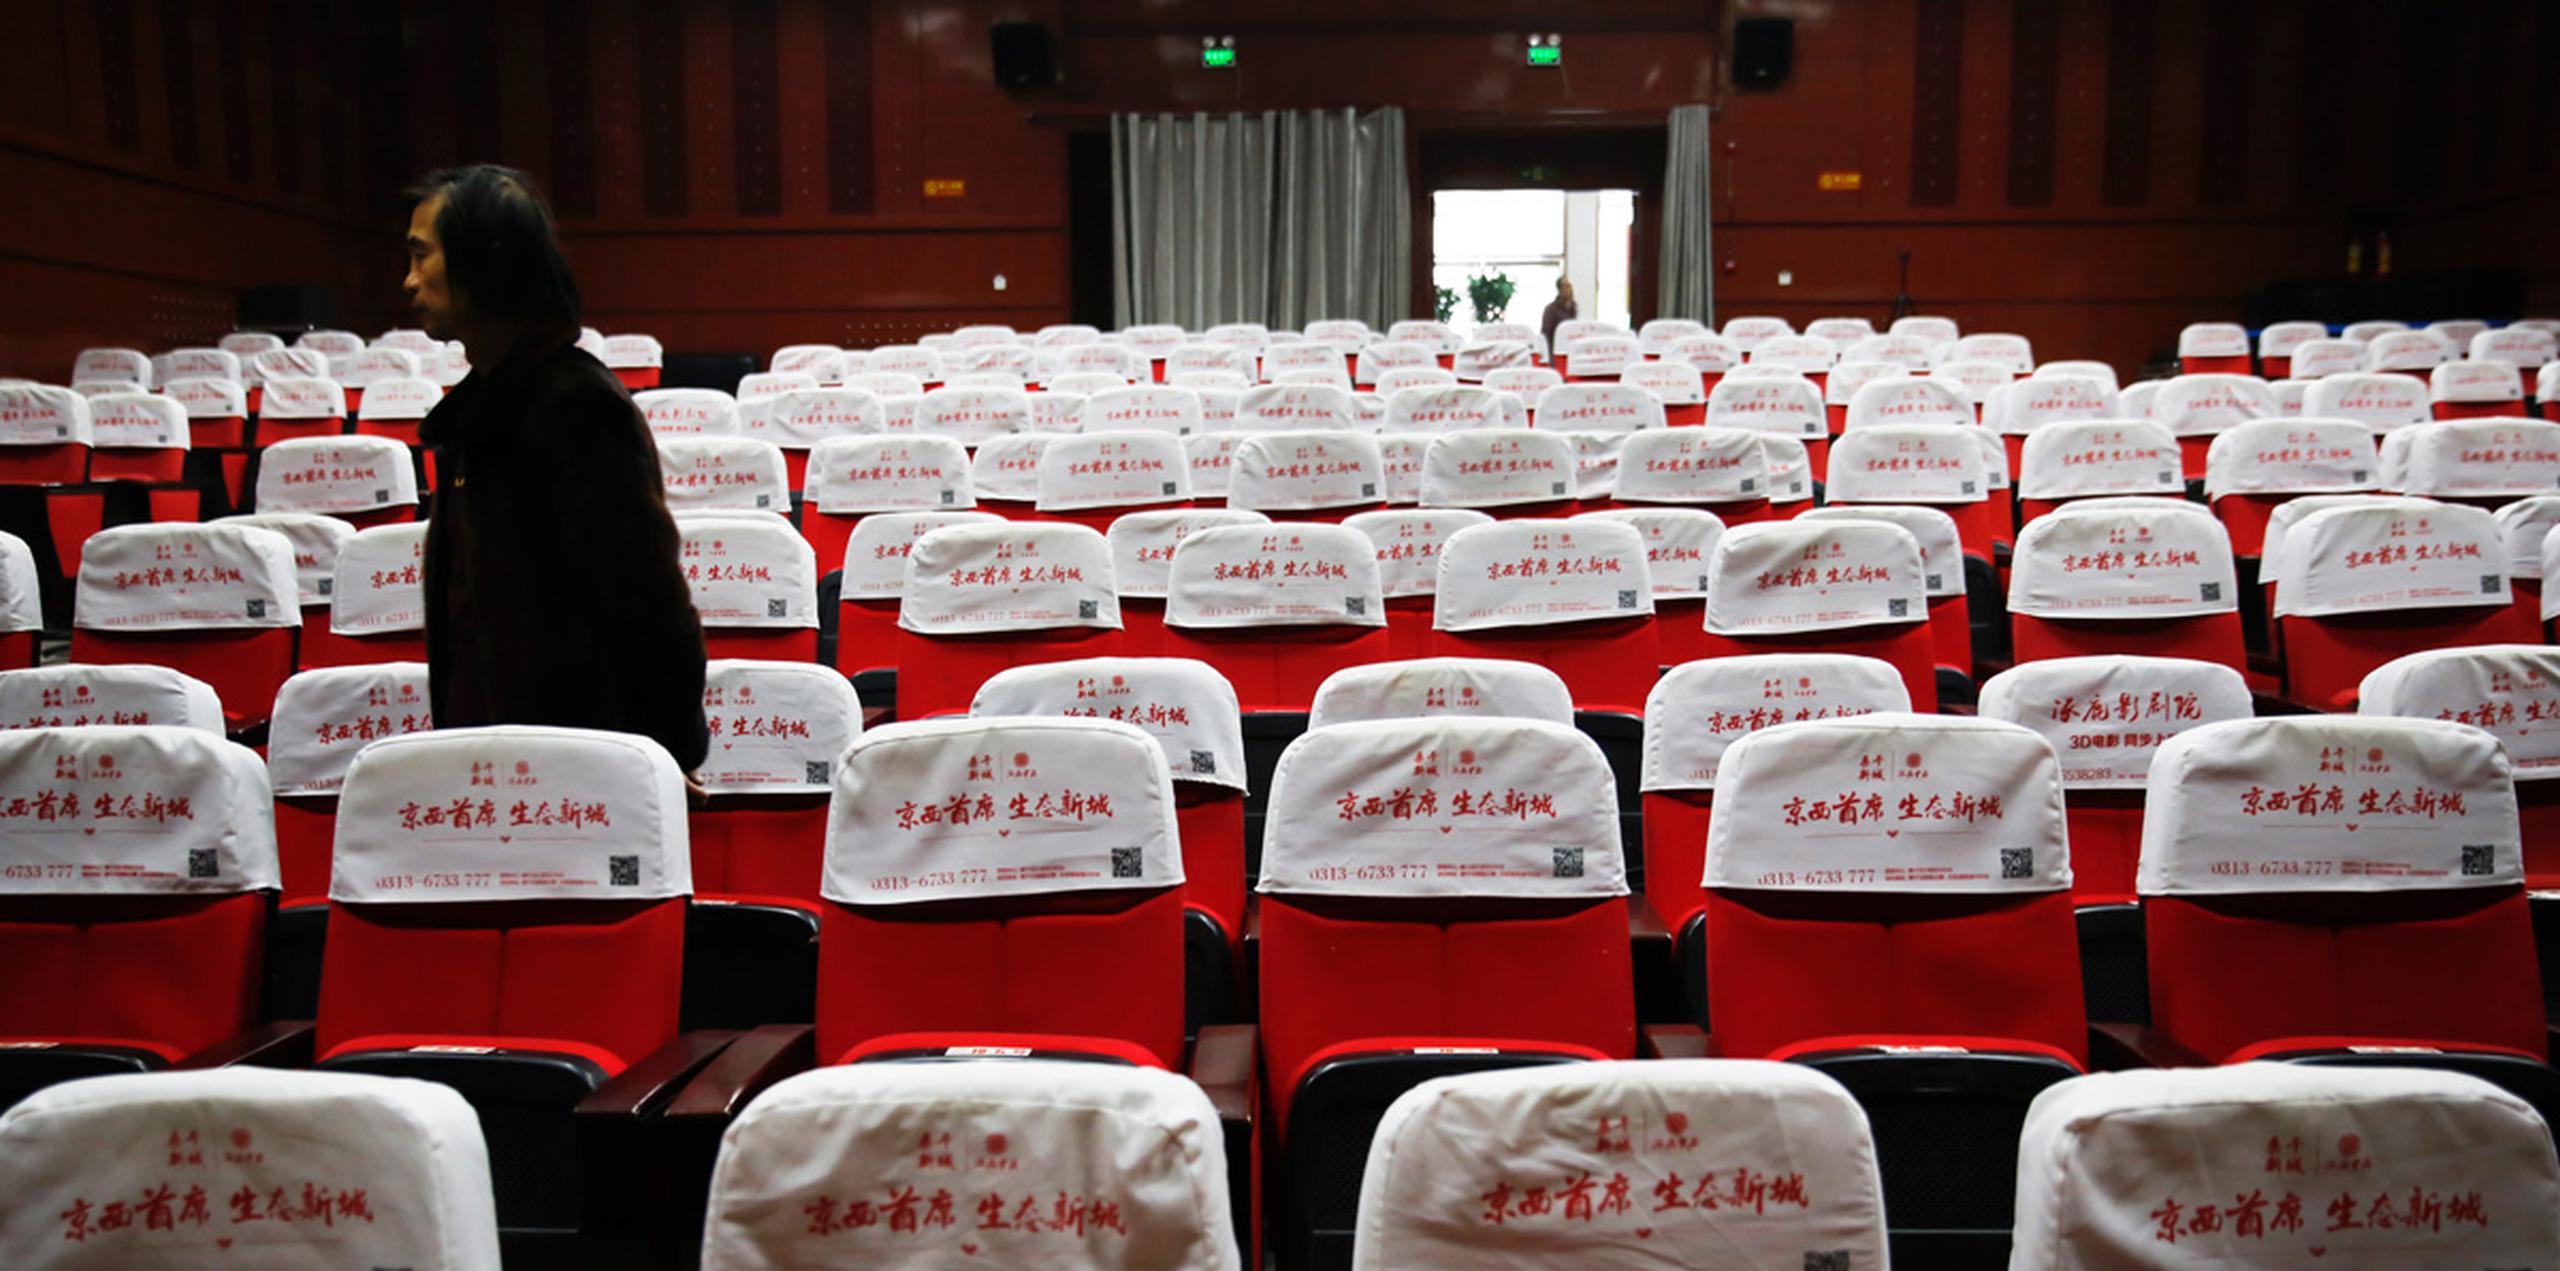 Los residentes de Zhuolu son los típicos chinos que no tienen costumbre de asistir a las salas de cine y prefieren mirar películas en internet gratuitamente. (AP)